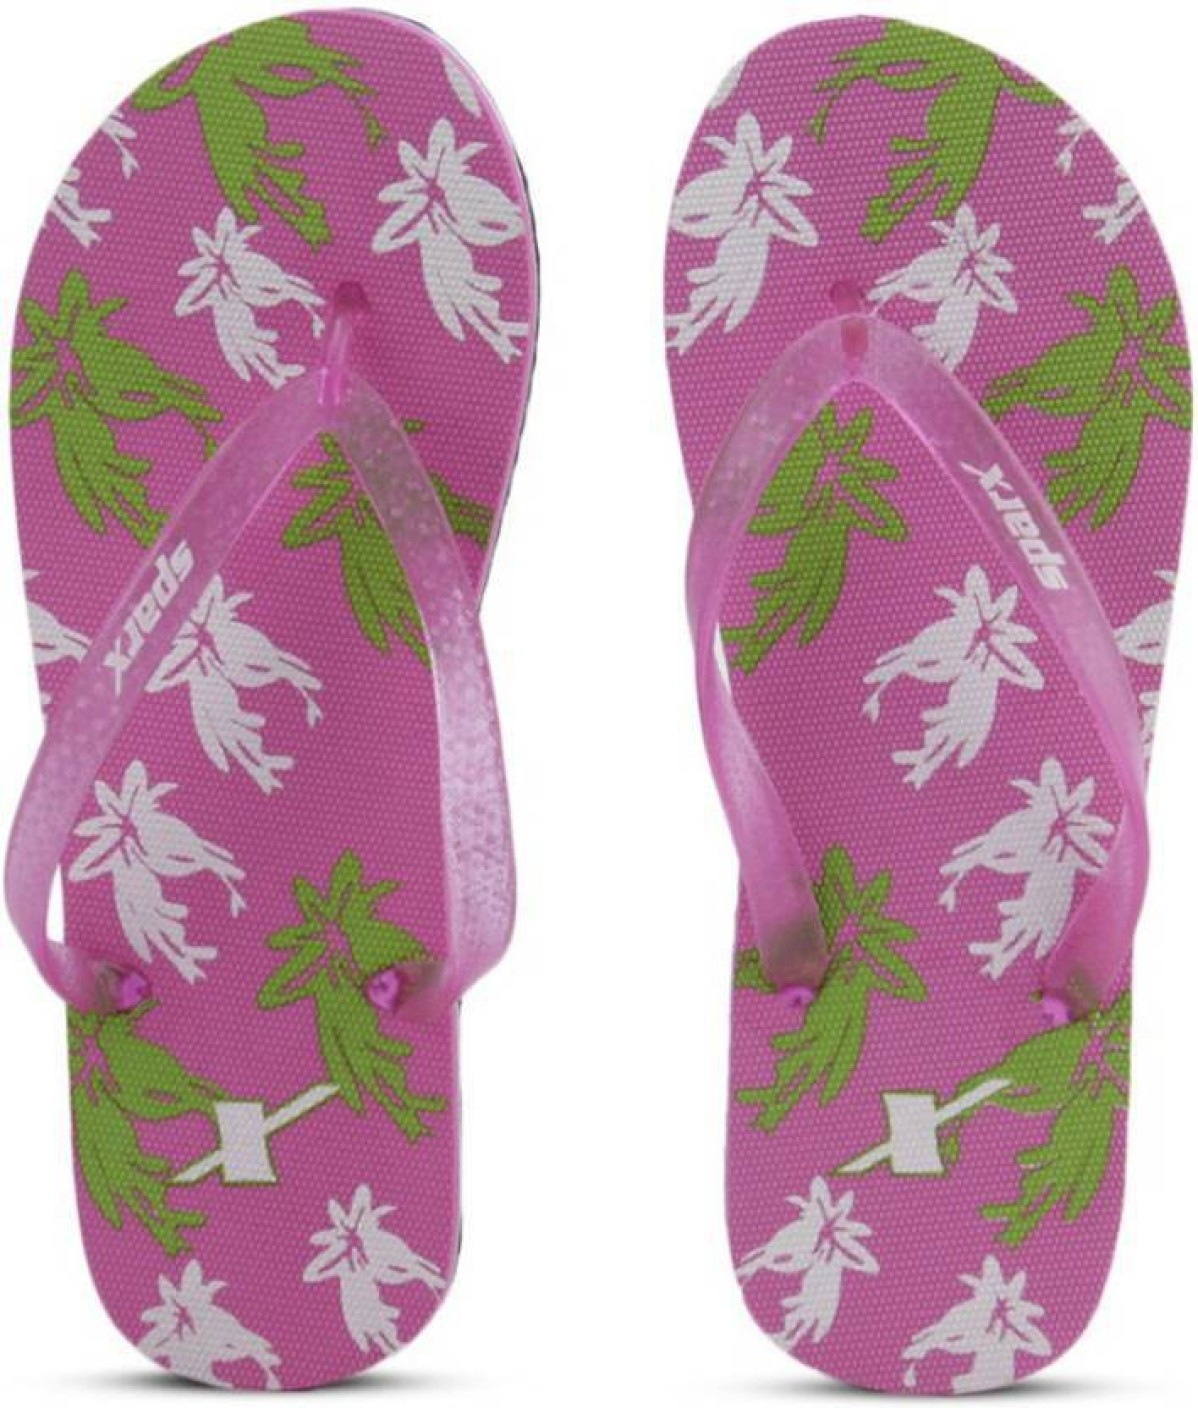 Sparx Women Flip Flops - Buy Pink Color Sparx Women Flip Flops Online ...